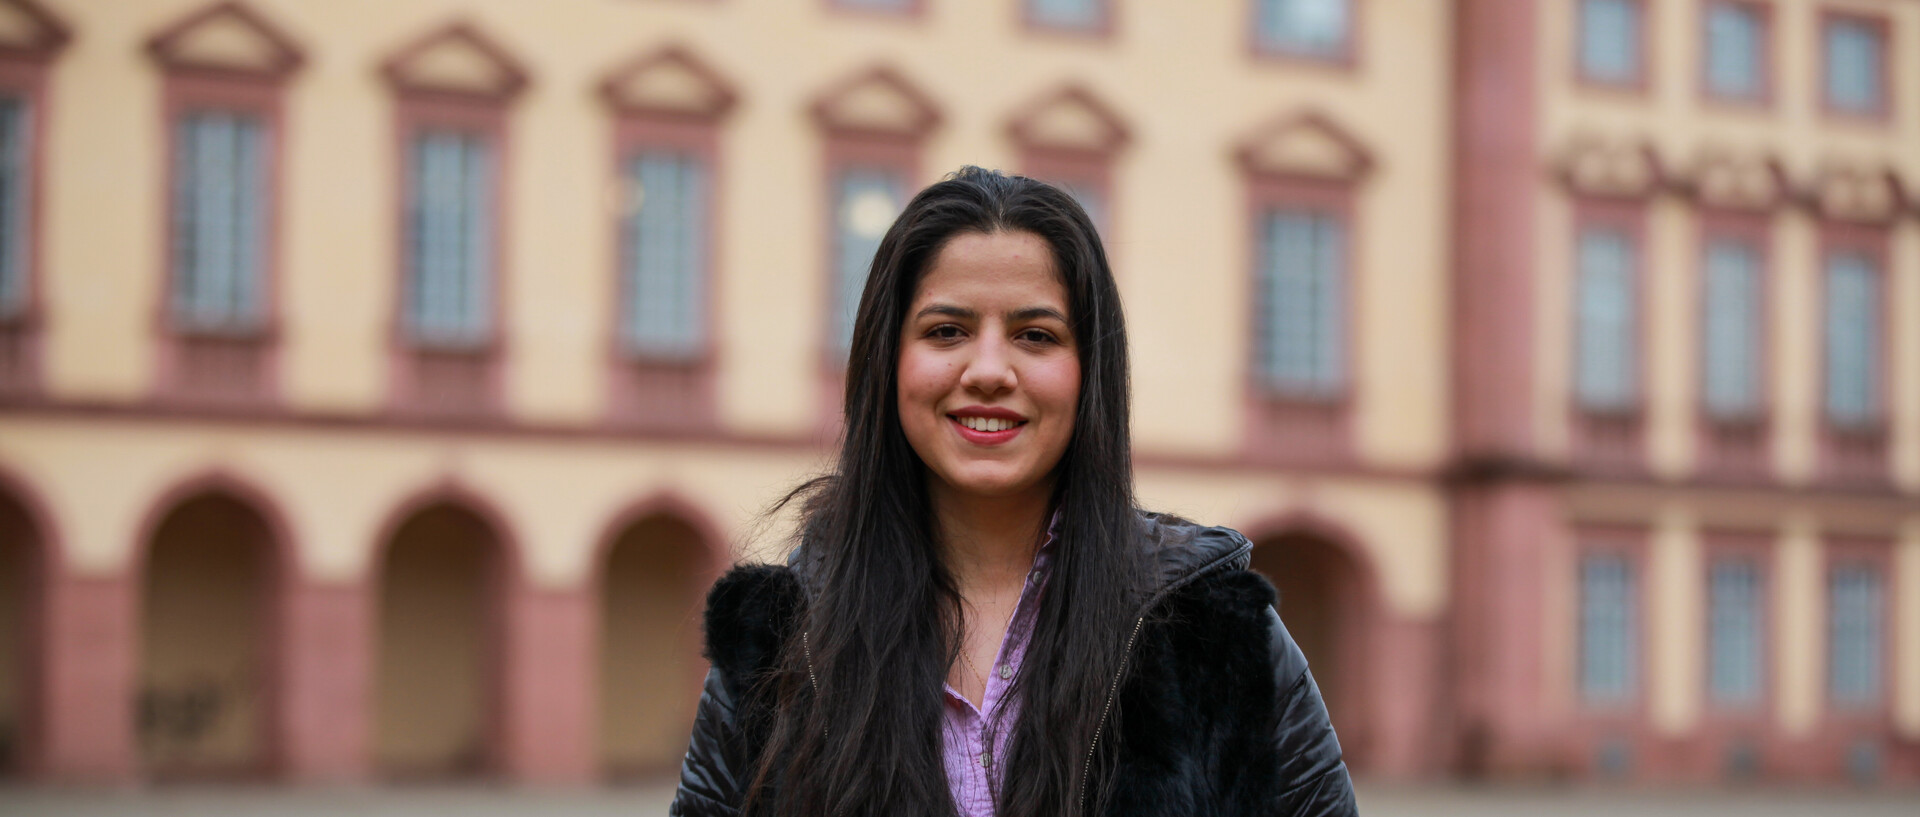 Eine lächelnde Person trägt eine lila-farbene Bluse sowie eine schwarze Jacke und steht vor dem Schloss. Die Person heißt Hala Fayad.